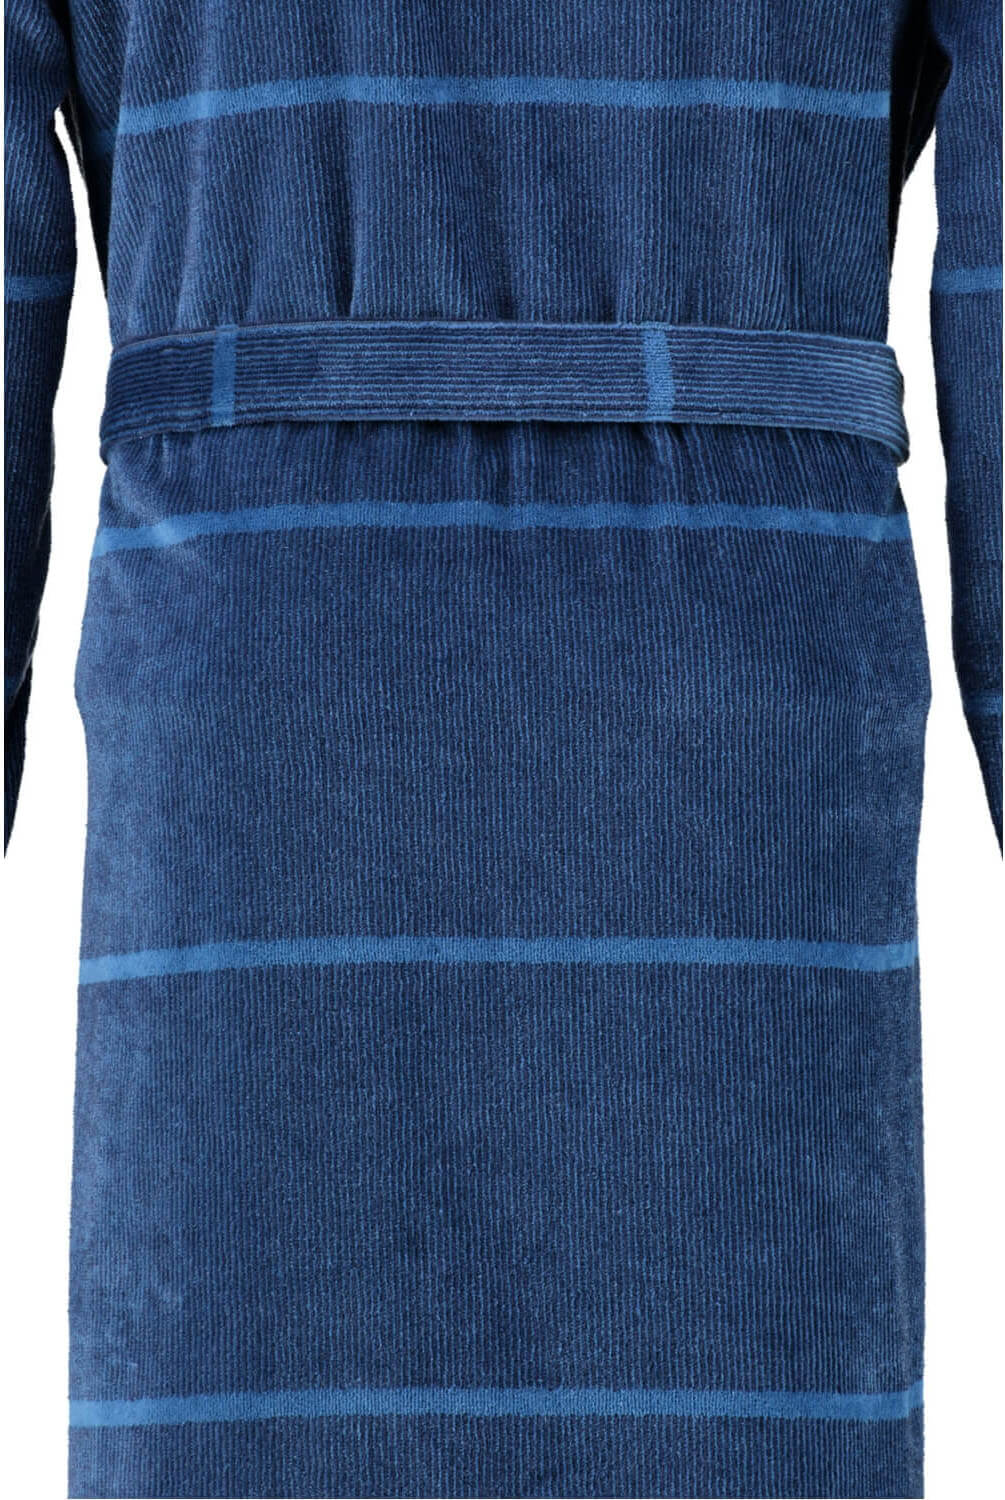 Мужской халат Cawo Kimono Blau ☞ Размер: 54